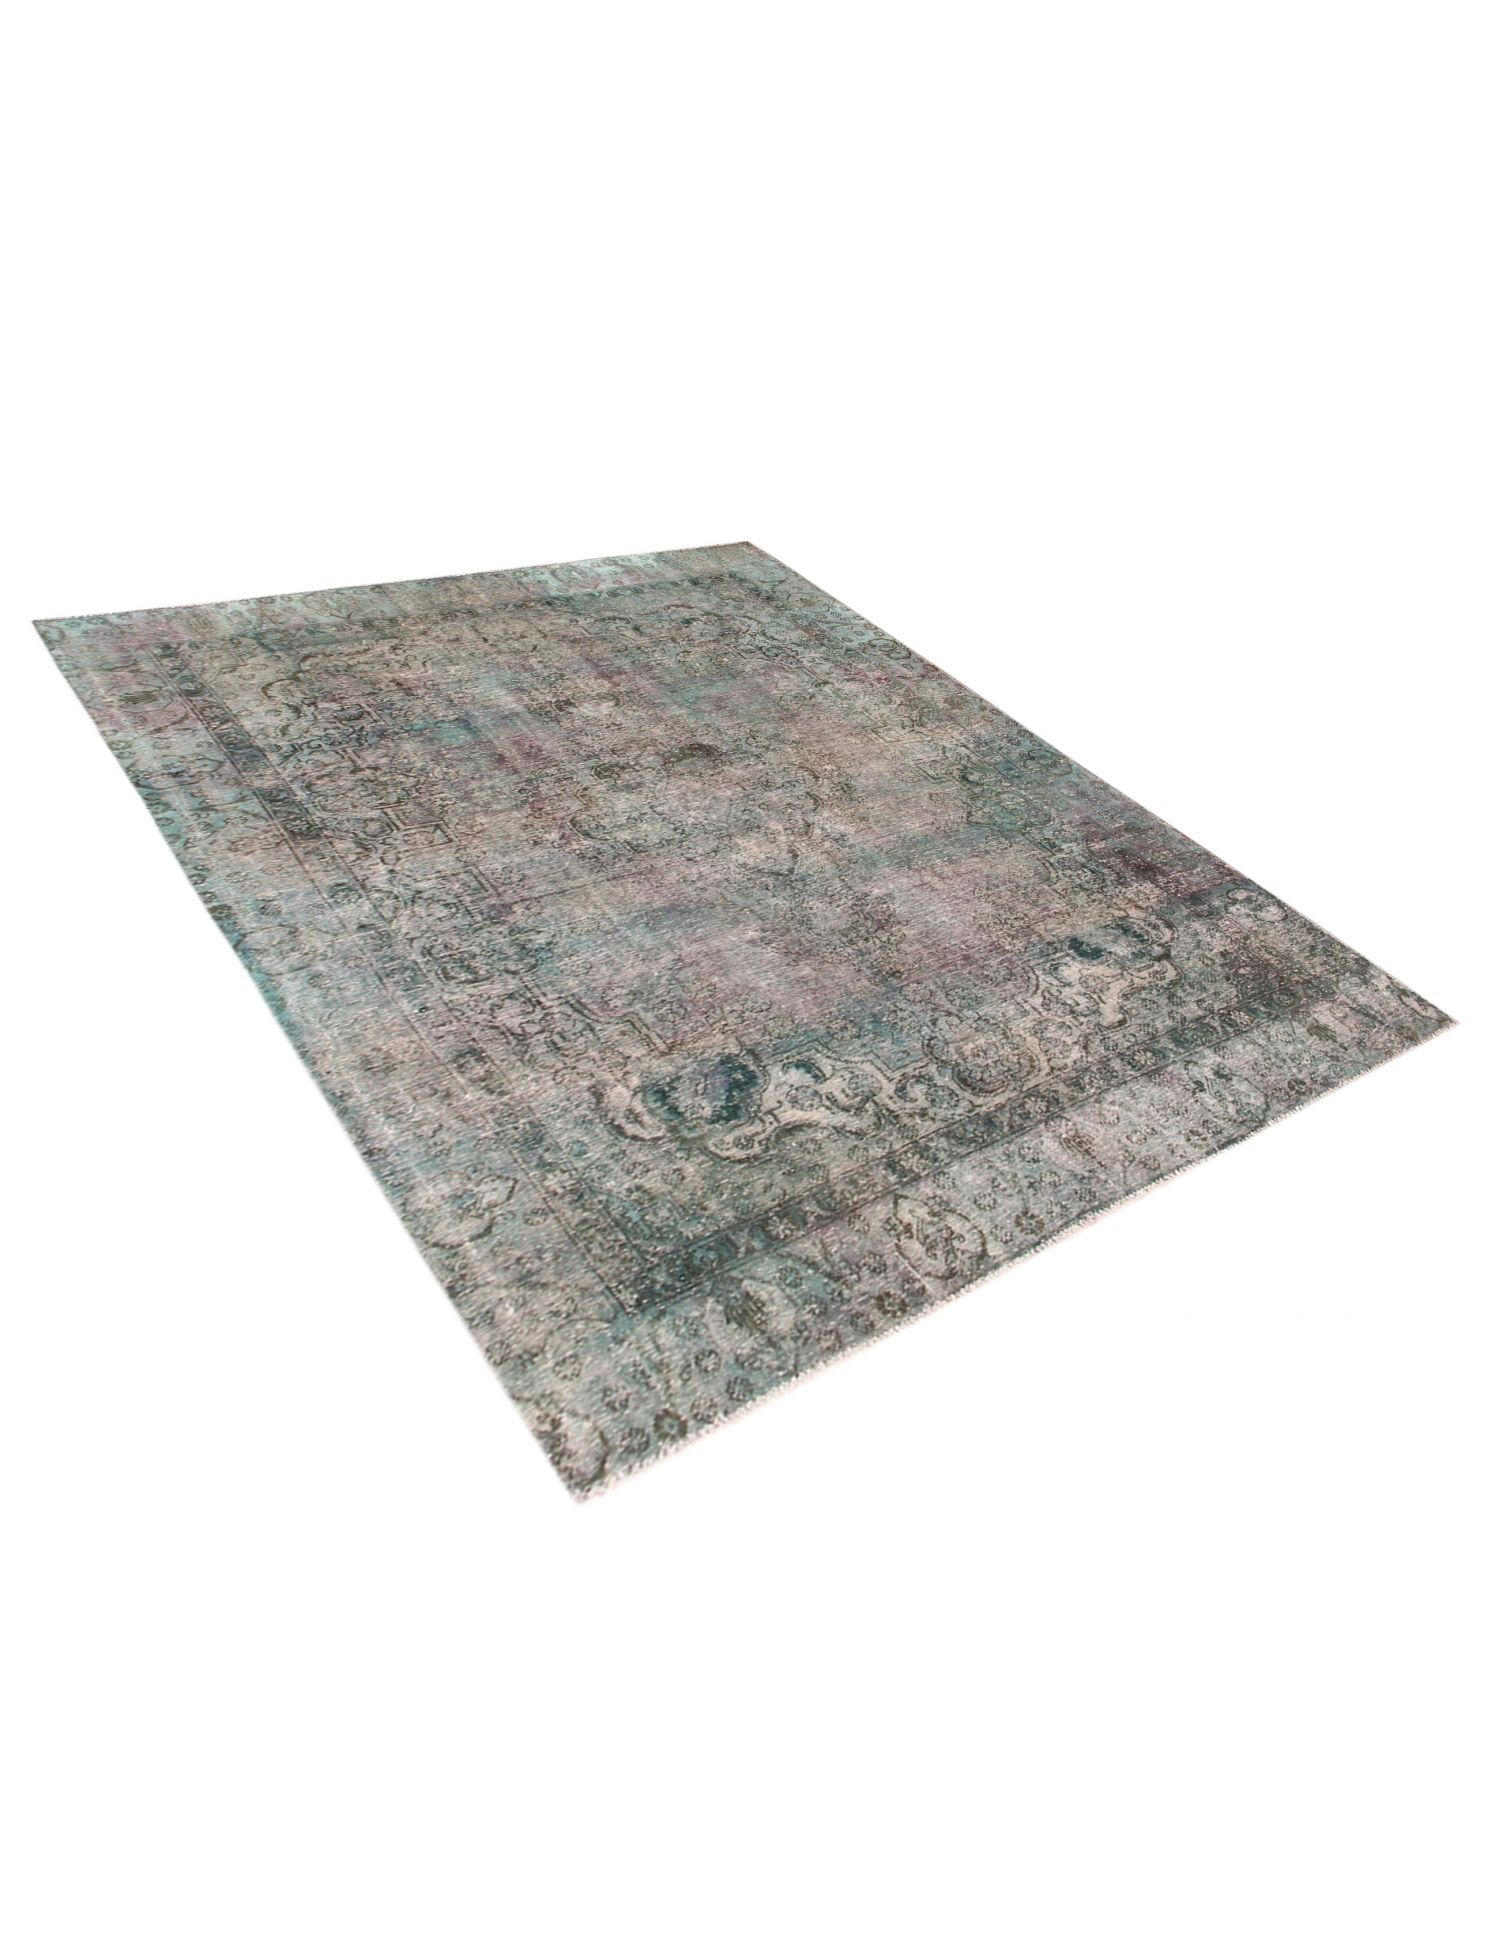 Persischer Vintage Teppich  grün <br/>295 x 230 cm